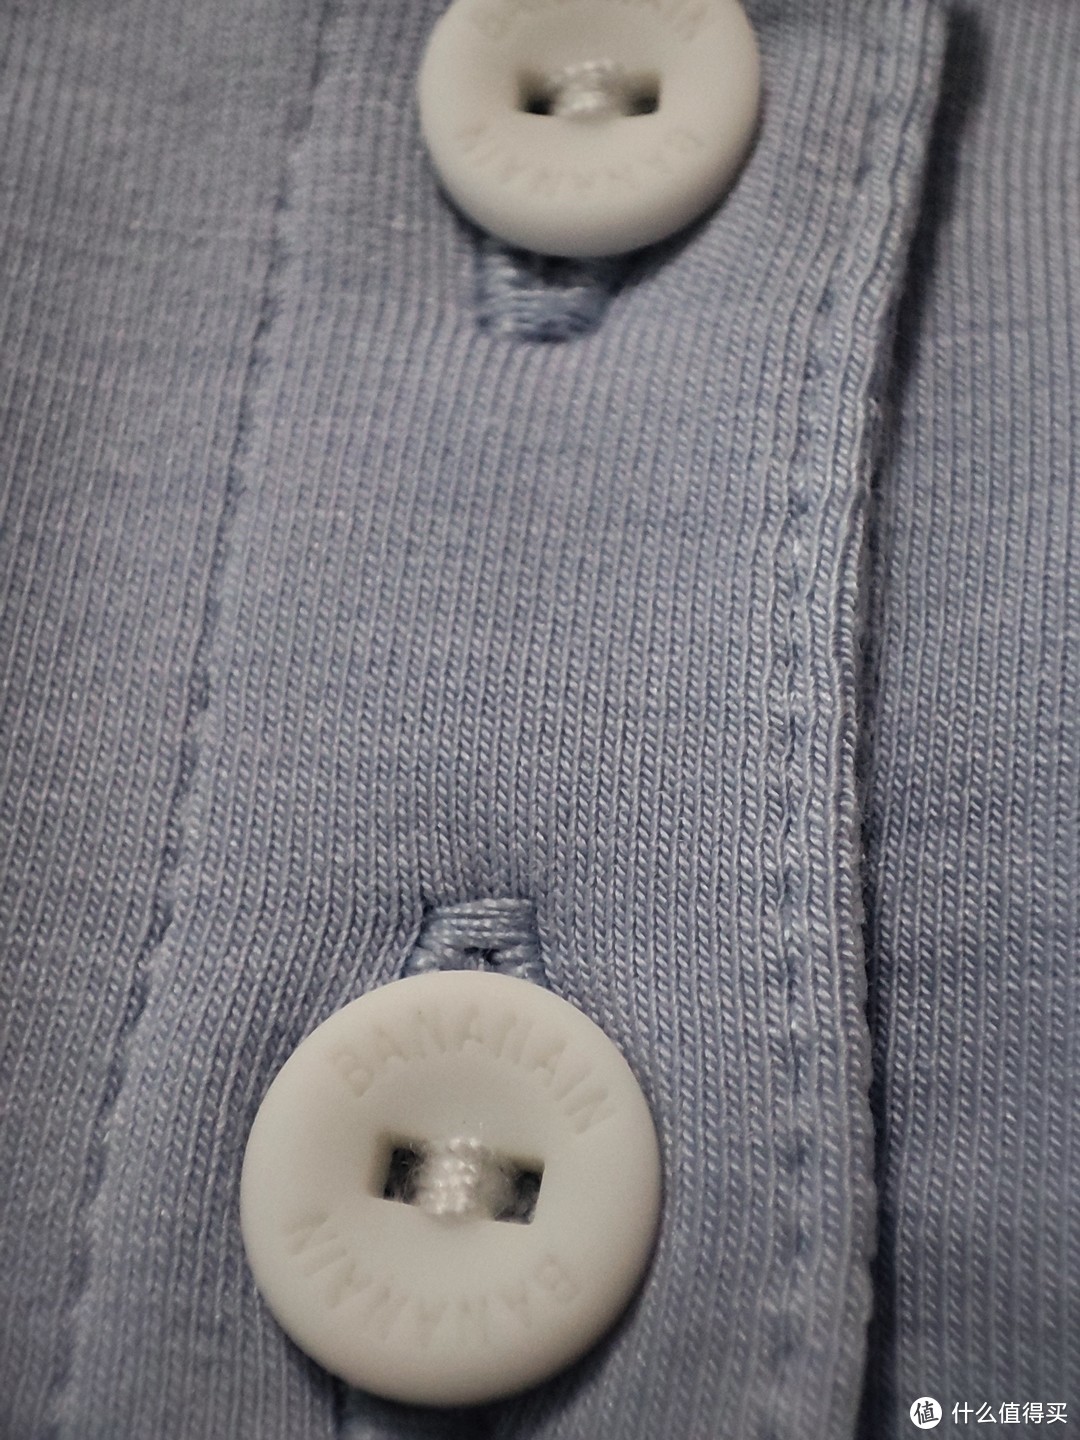 衣服的做工还是比较好的，纽扣上有LOGO。